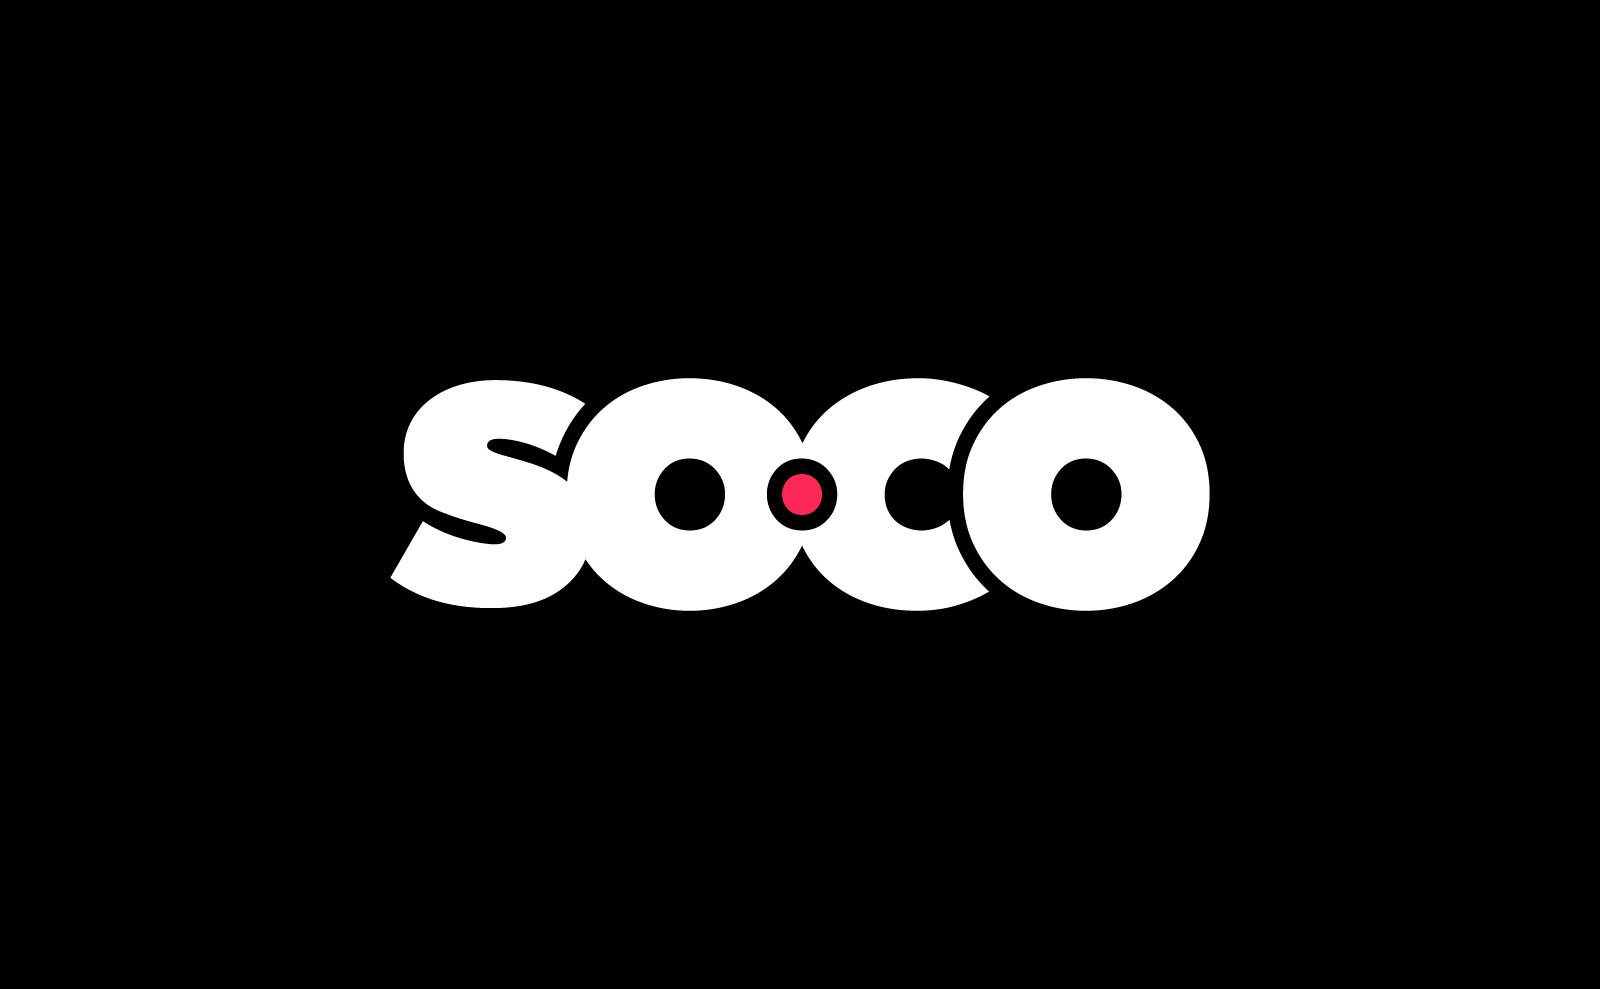 Soco identity brand logo